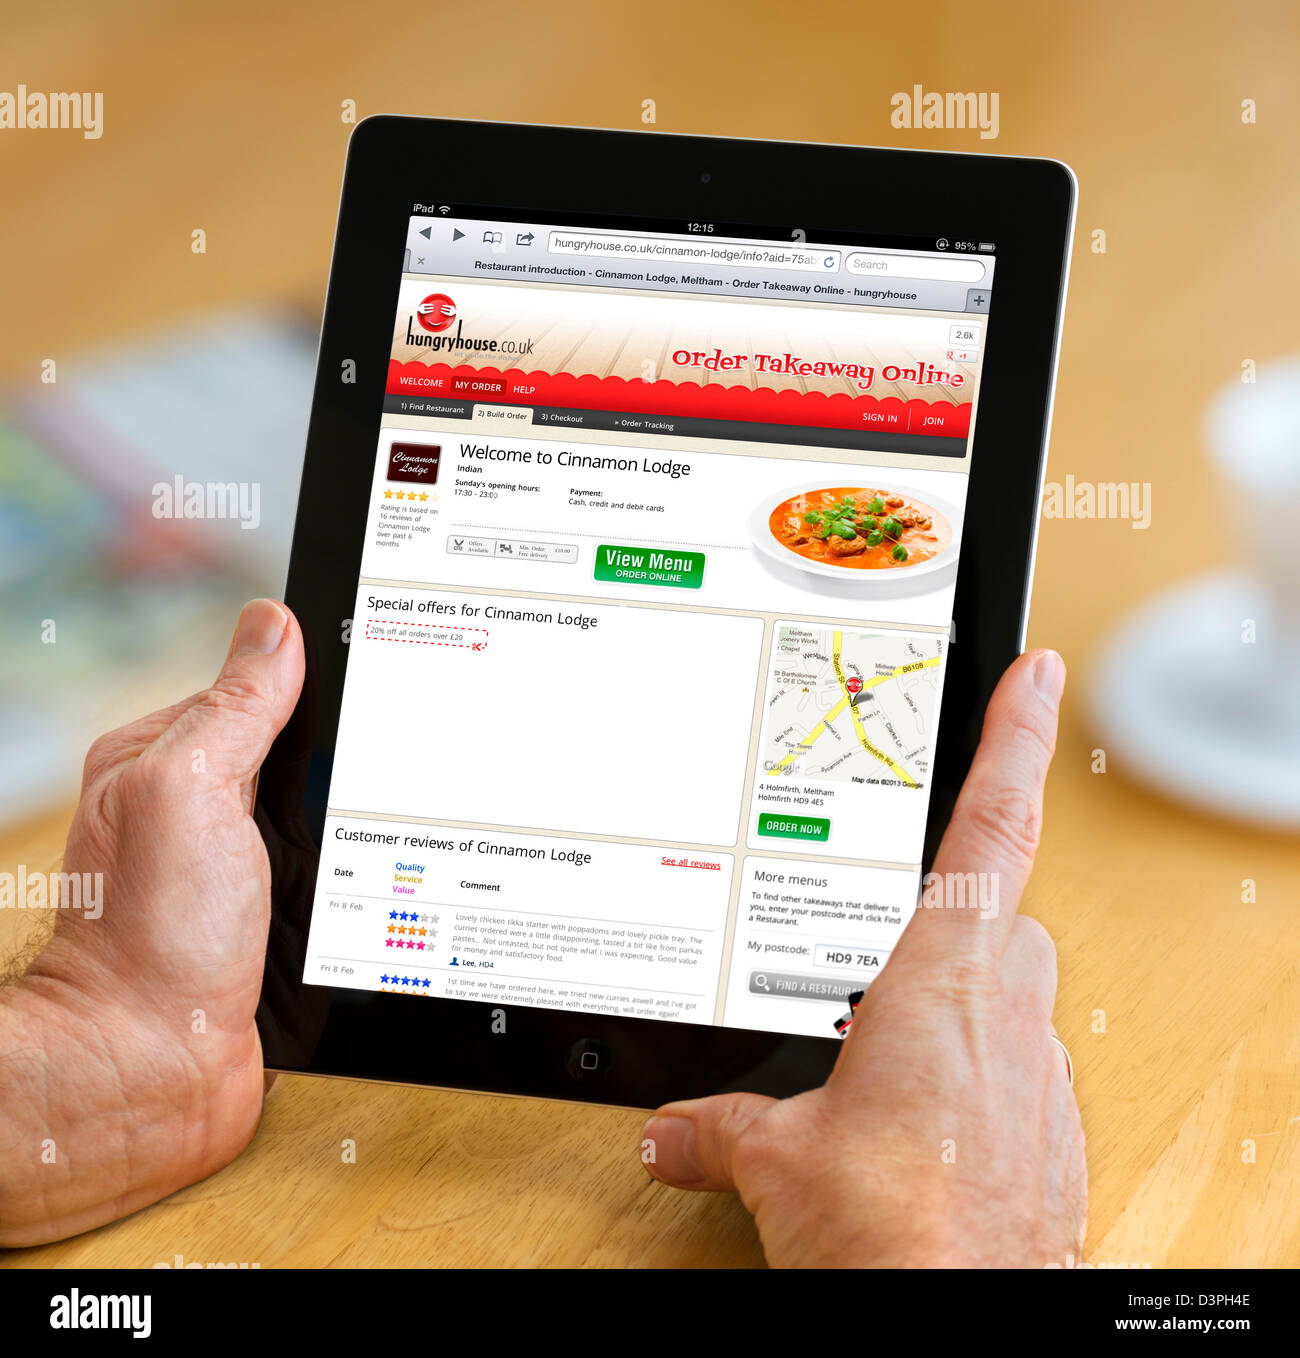 La hungryhouse.co.uk sitio web de pedidos de comida para llevar vistos en un iPad Foto de stock